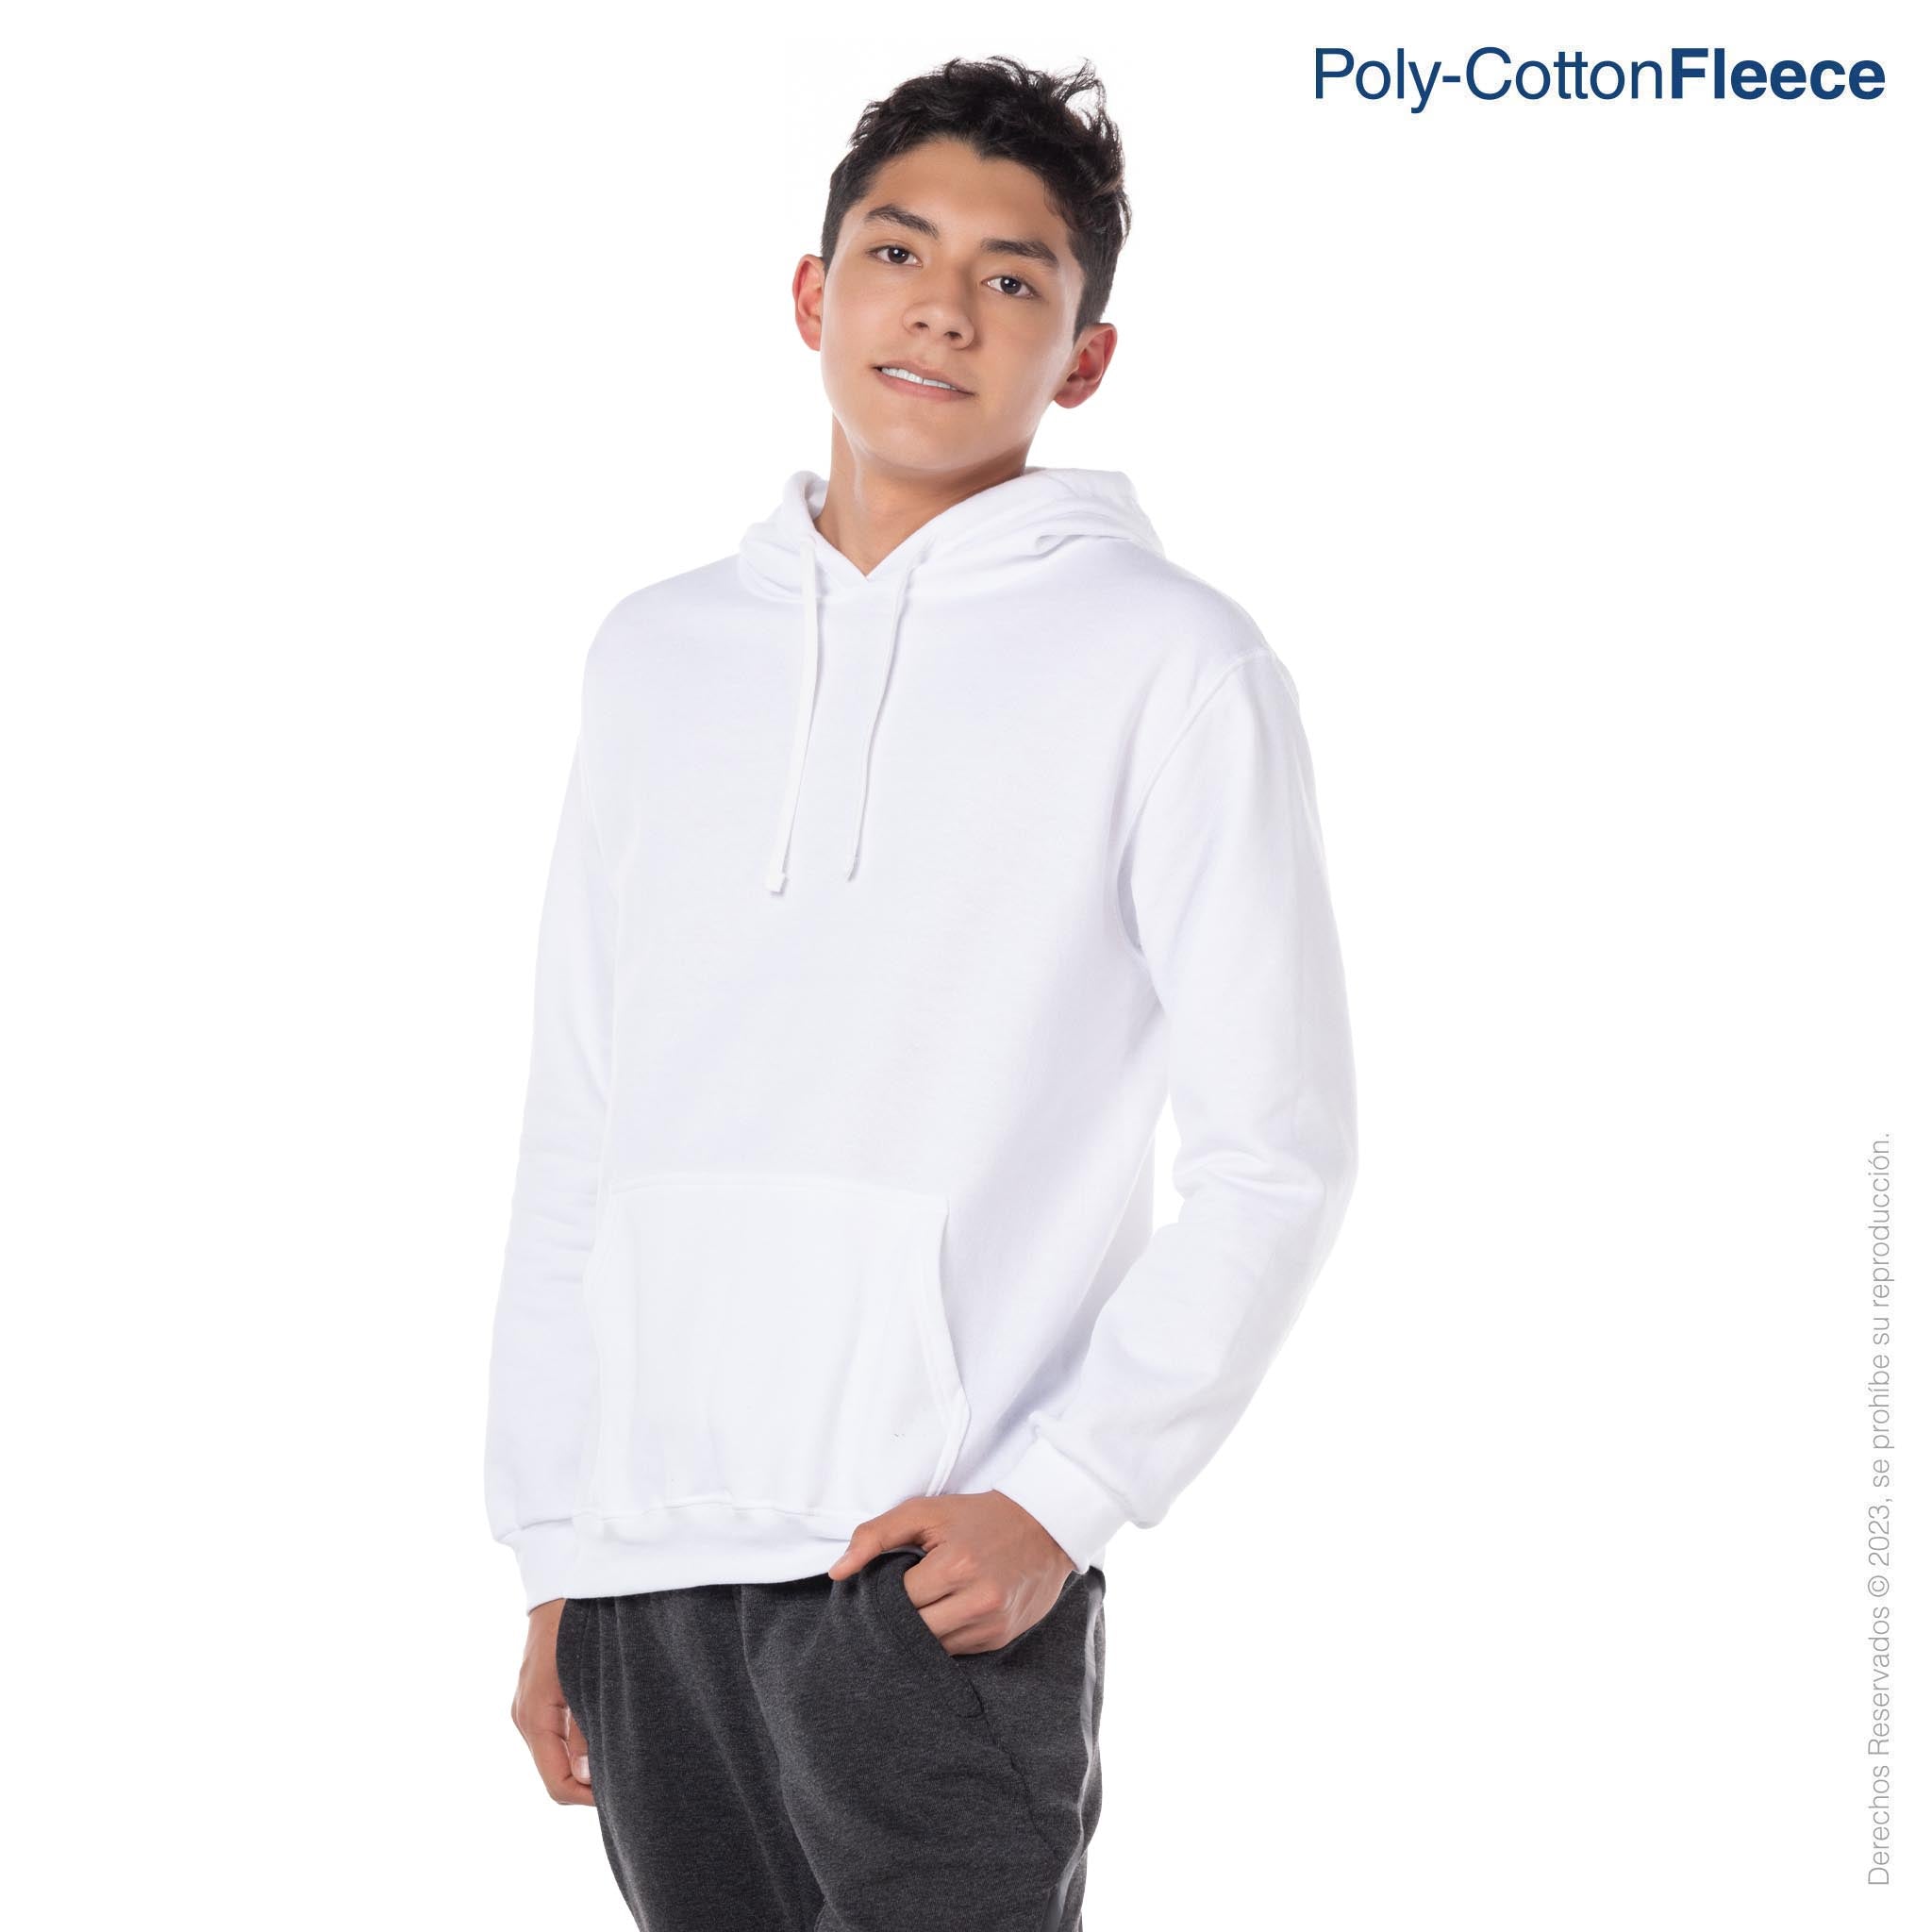 Youth's Unisex Hooded Sweatshirt With Kangaroo Pocket (White) – Yazbek USA  Mint